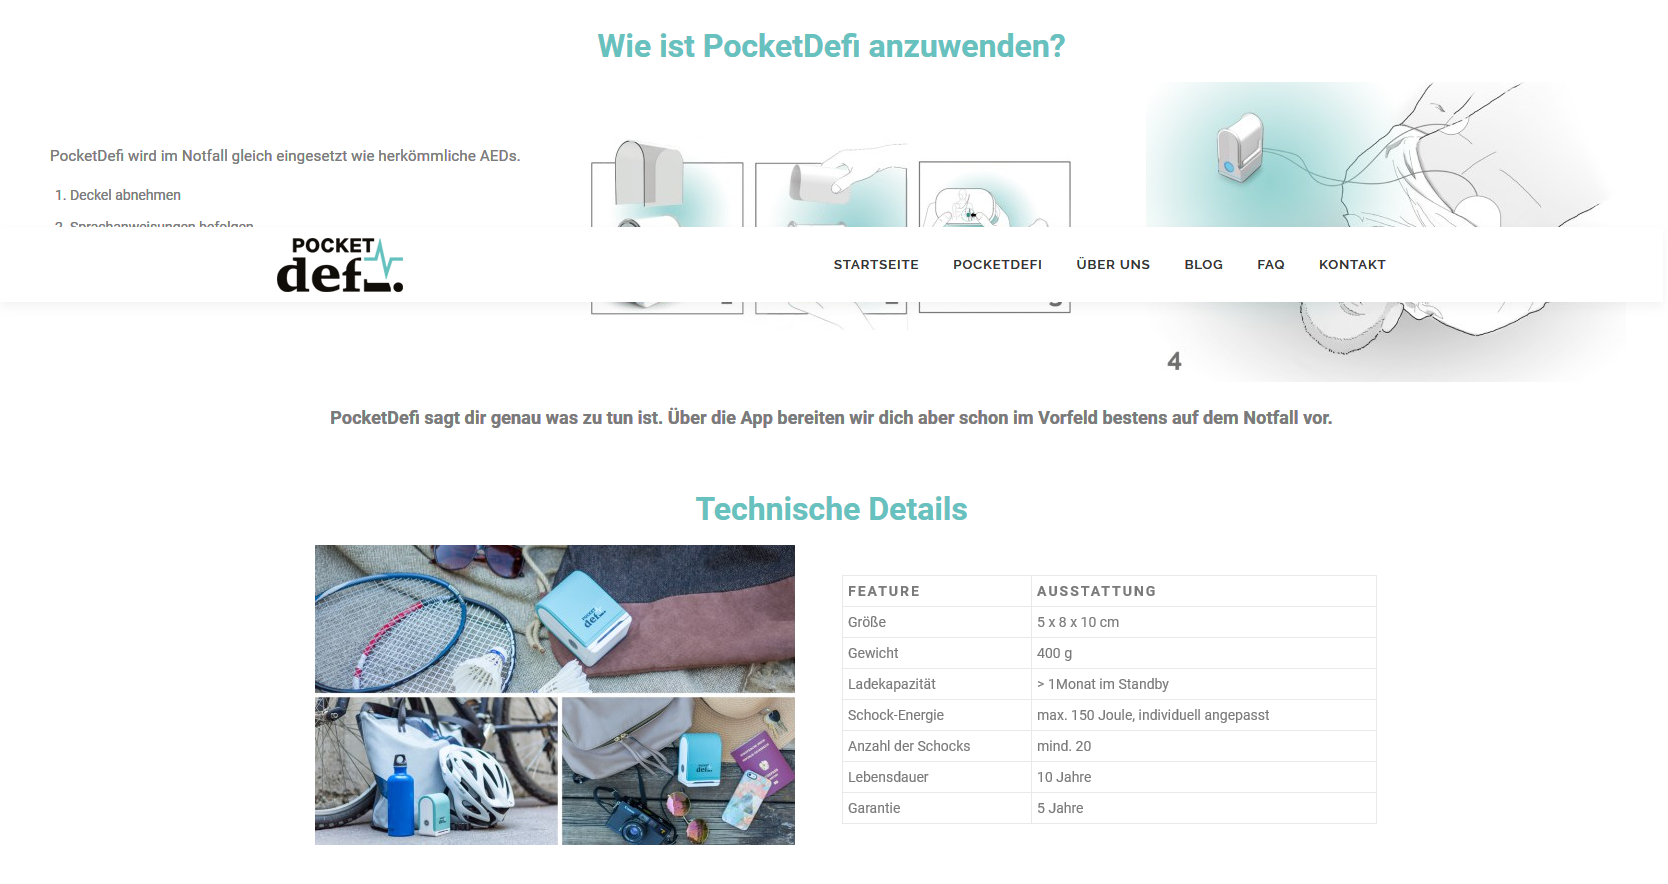 PocketDefi - Specifications